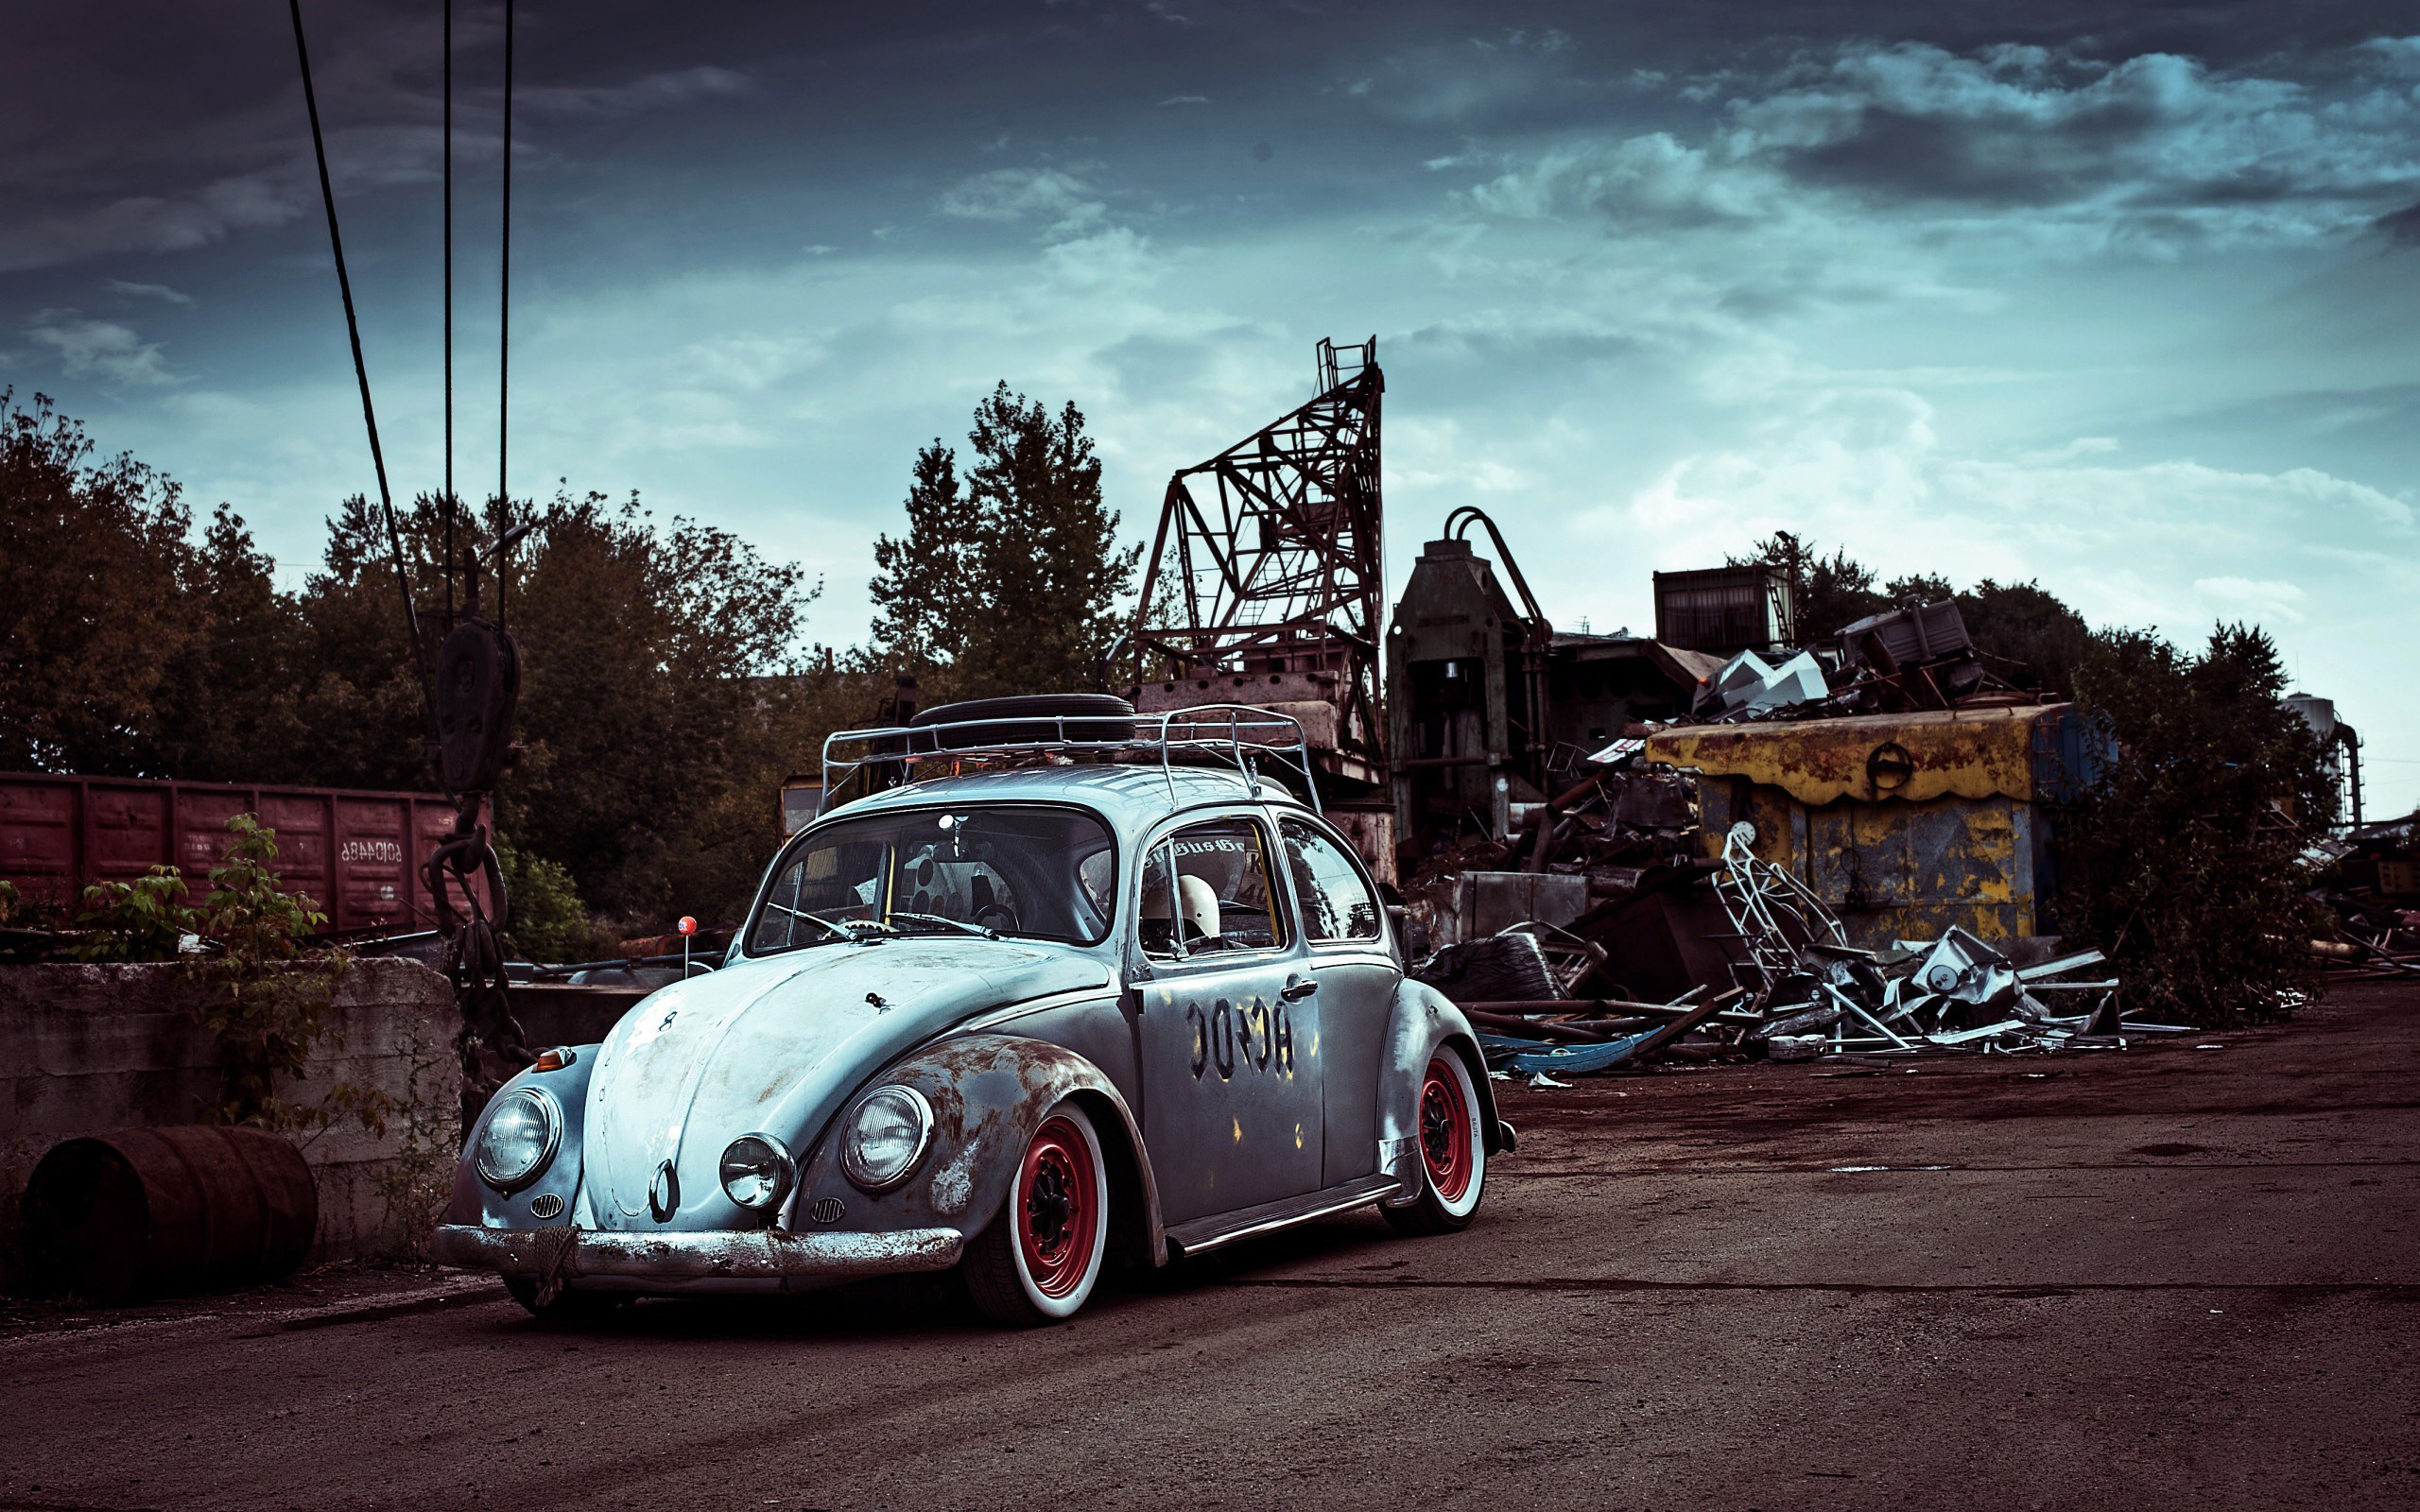 2560x1600 car-volkswagen-beetle-hd-wallpapers